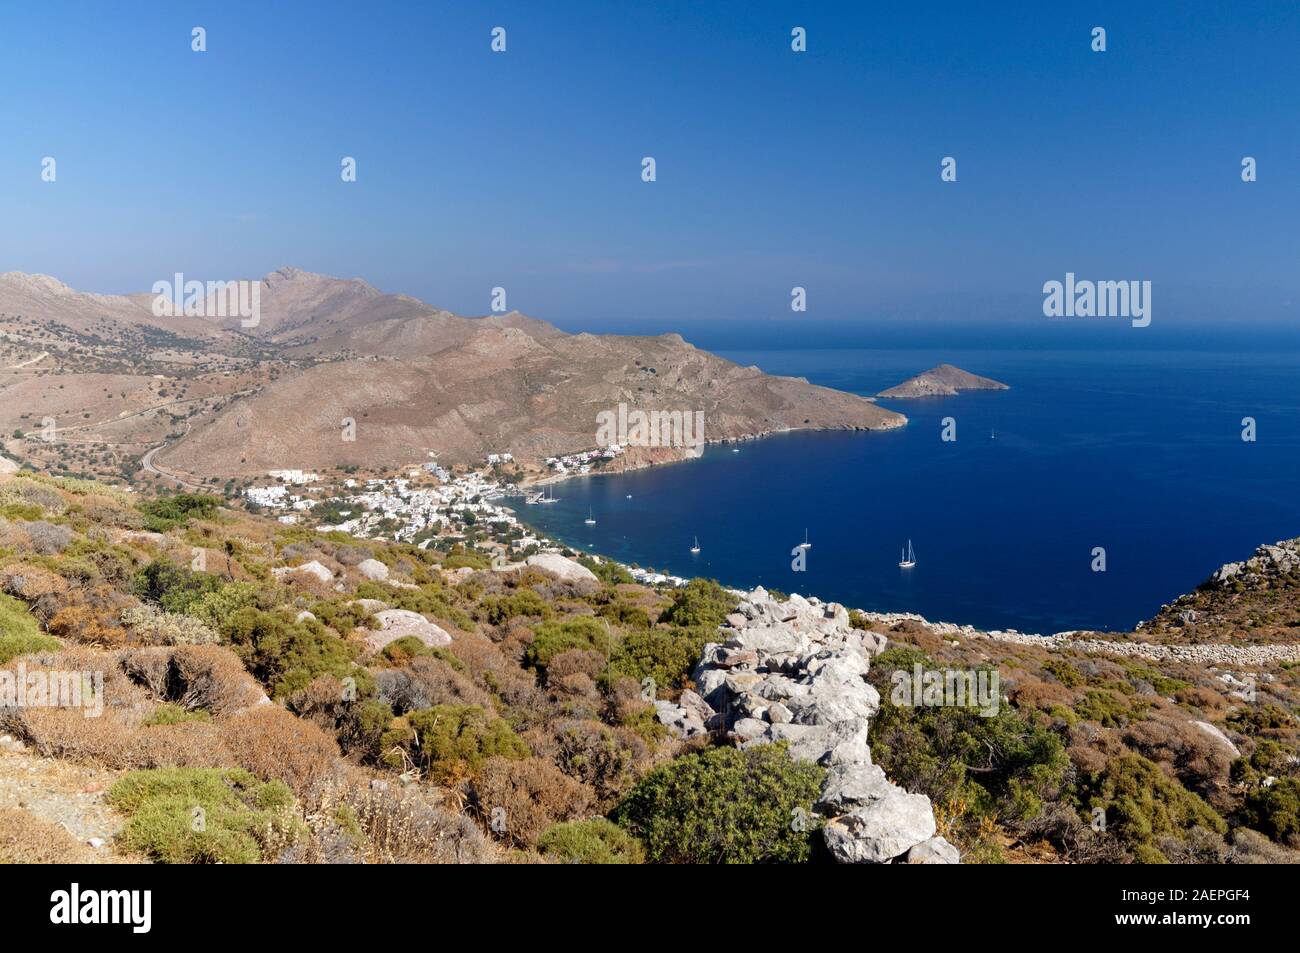 Vista de la bahía desde Vounos Livadia, tilos, islas del Dodecaneso, en el sur del Mar Egeo, en Grecia. Foto de stock